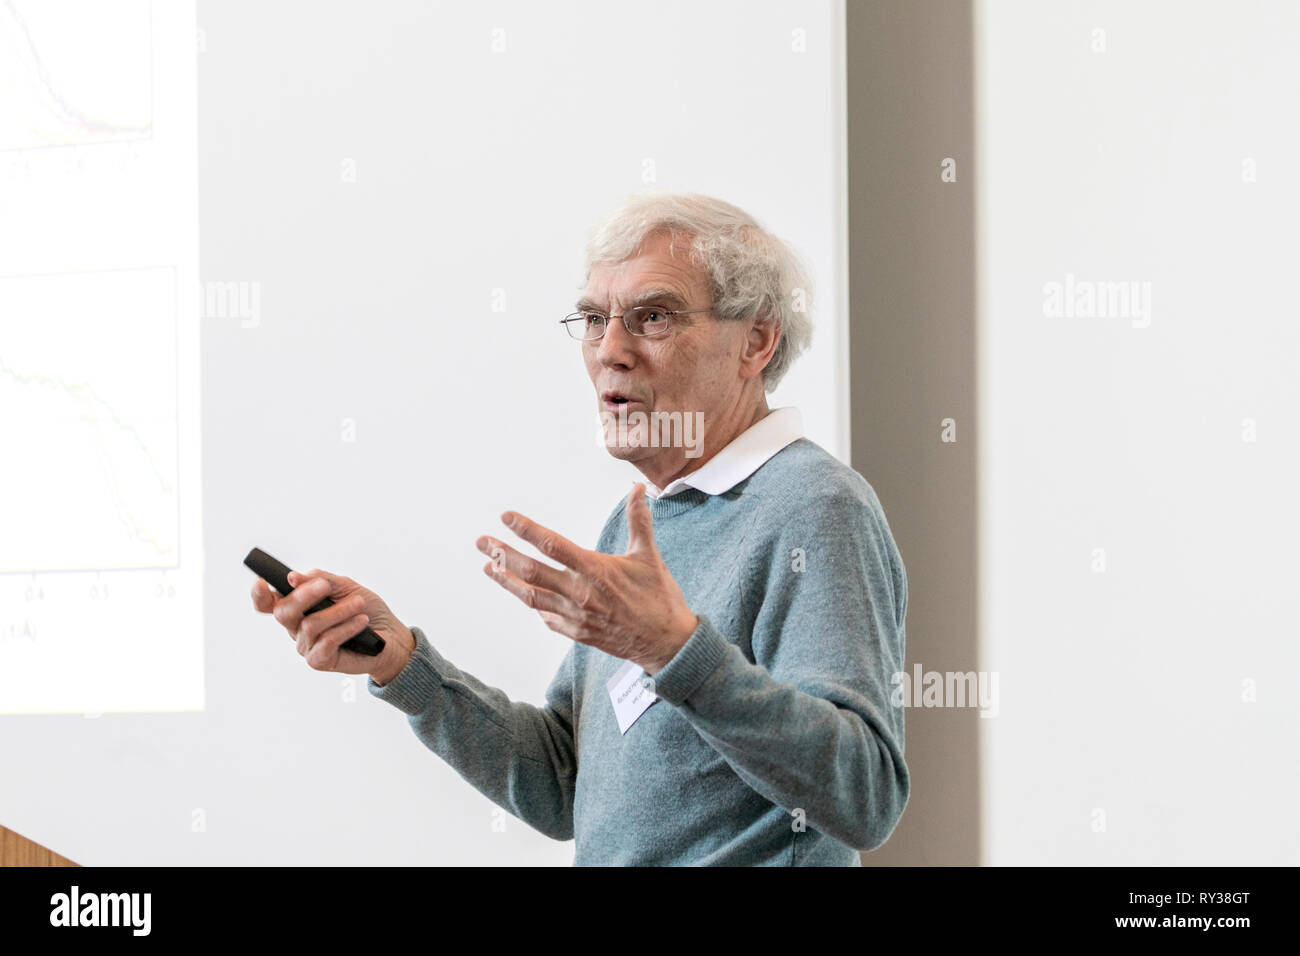 Richard Henderson, Nobel Prize winner for Chemistry 2017 (Picture 2019) Stock Photo